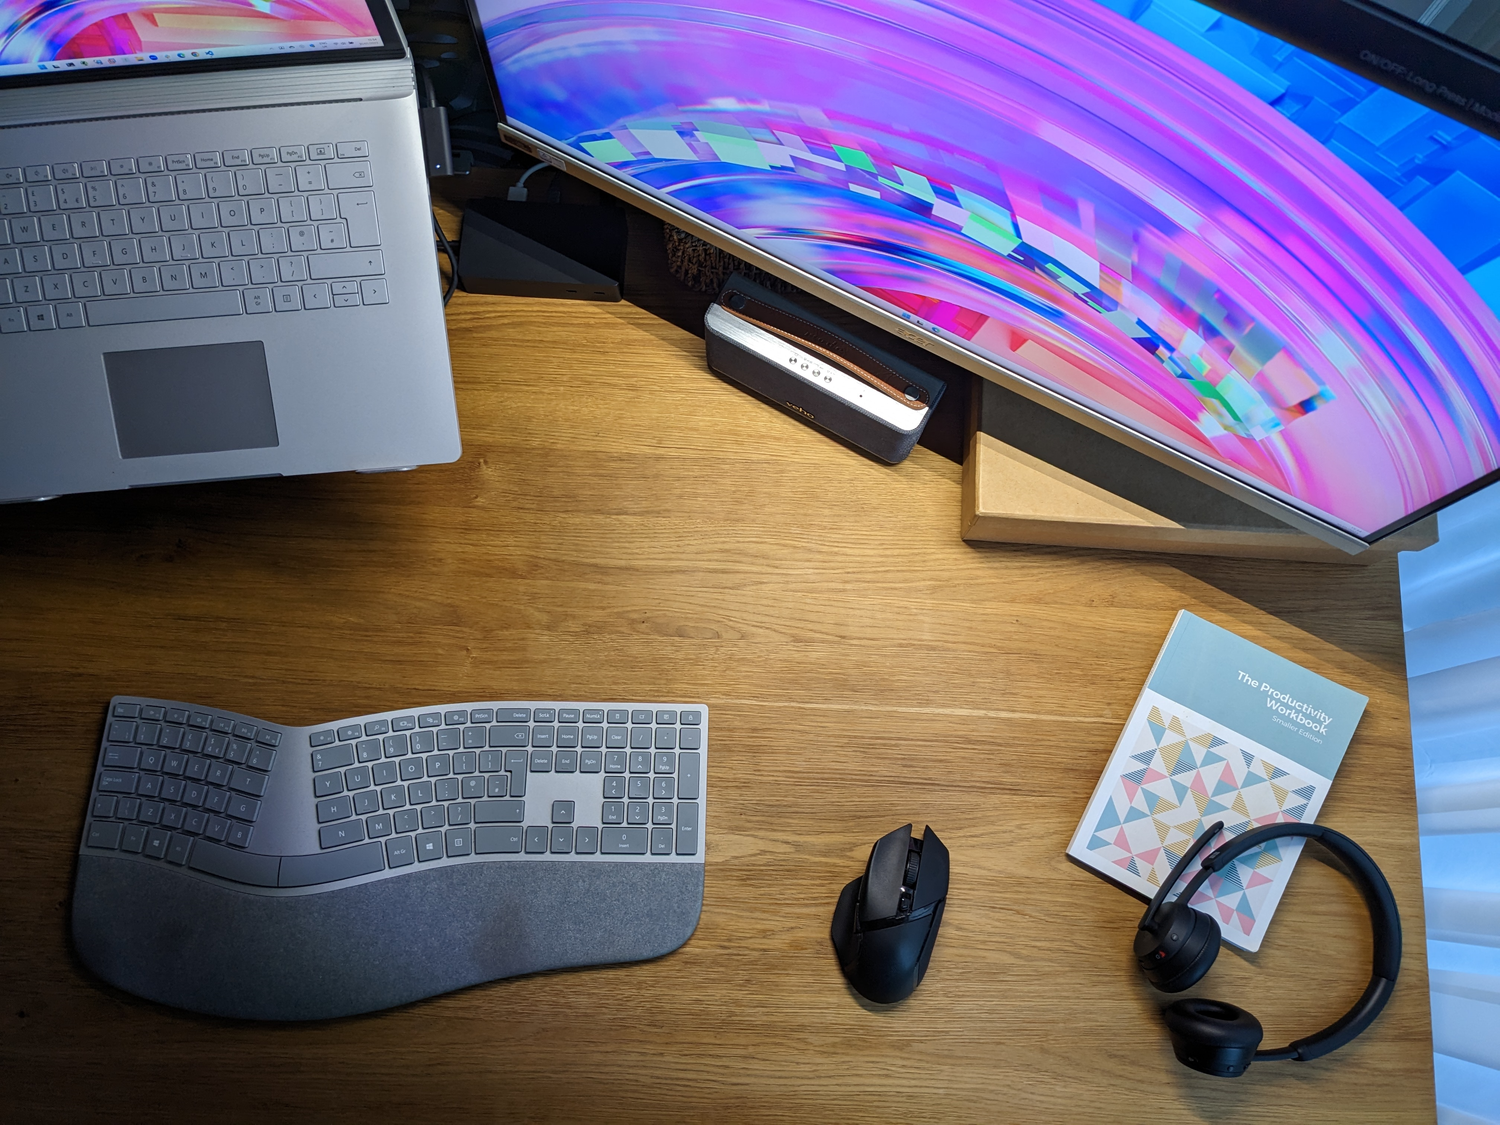 Microsoft Surface keyboard and wireless headset